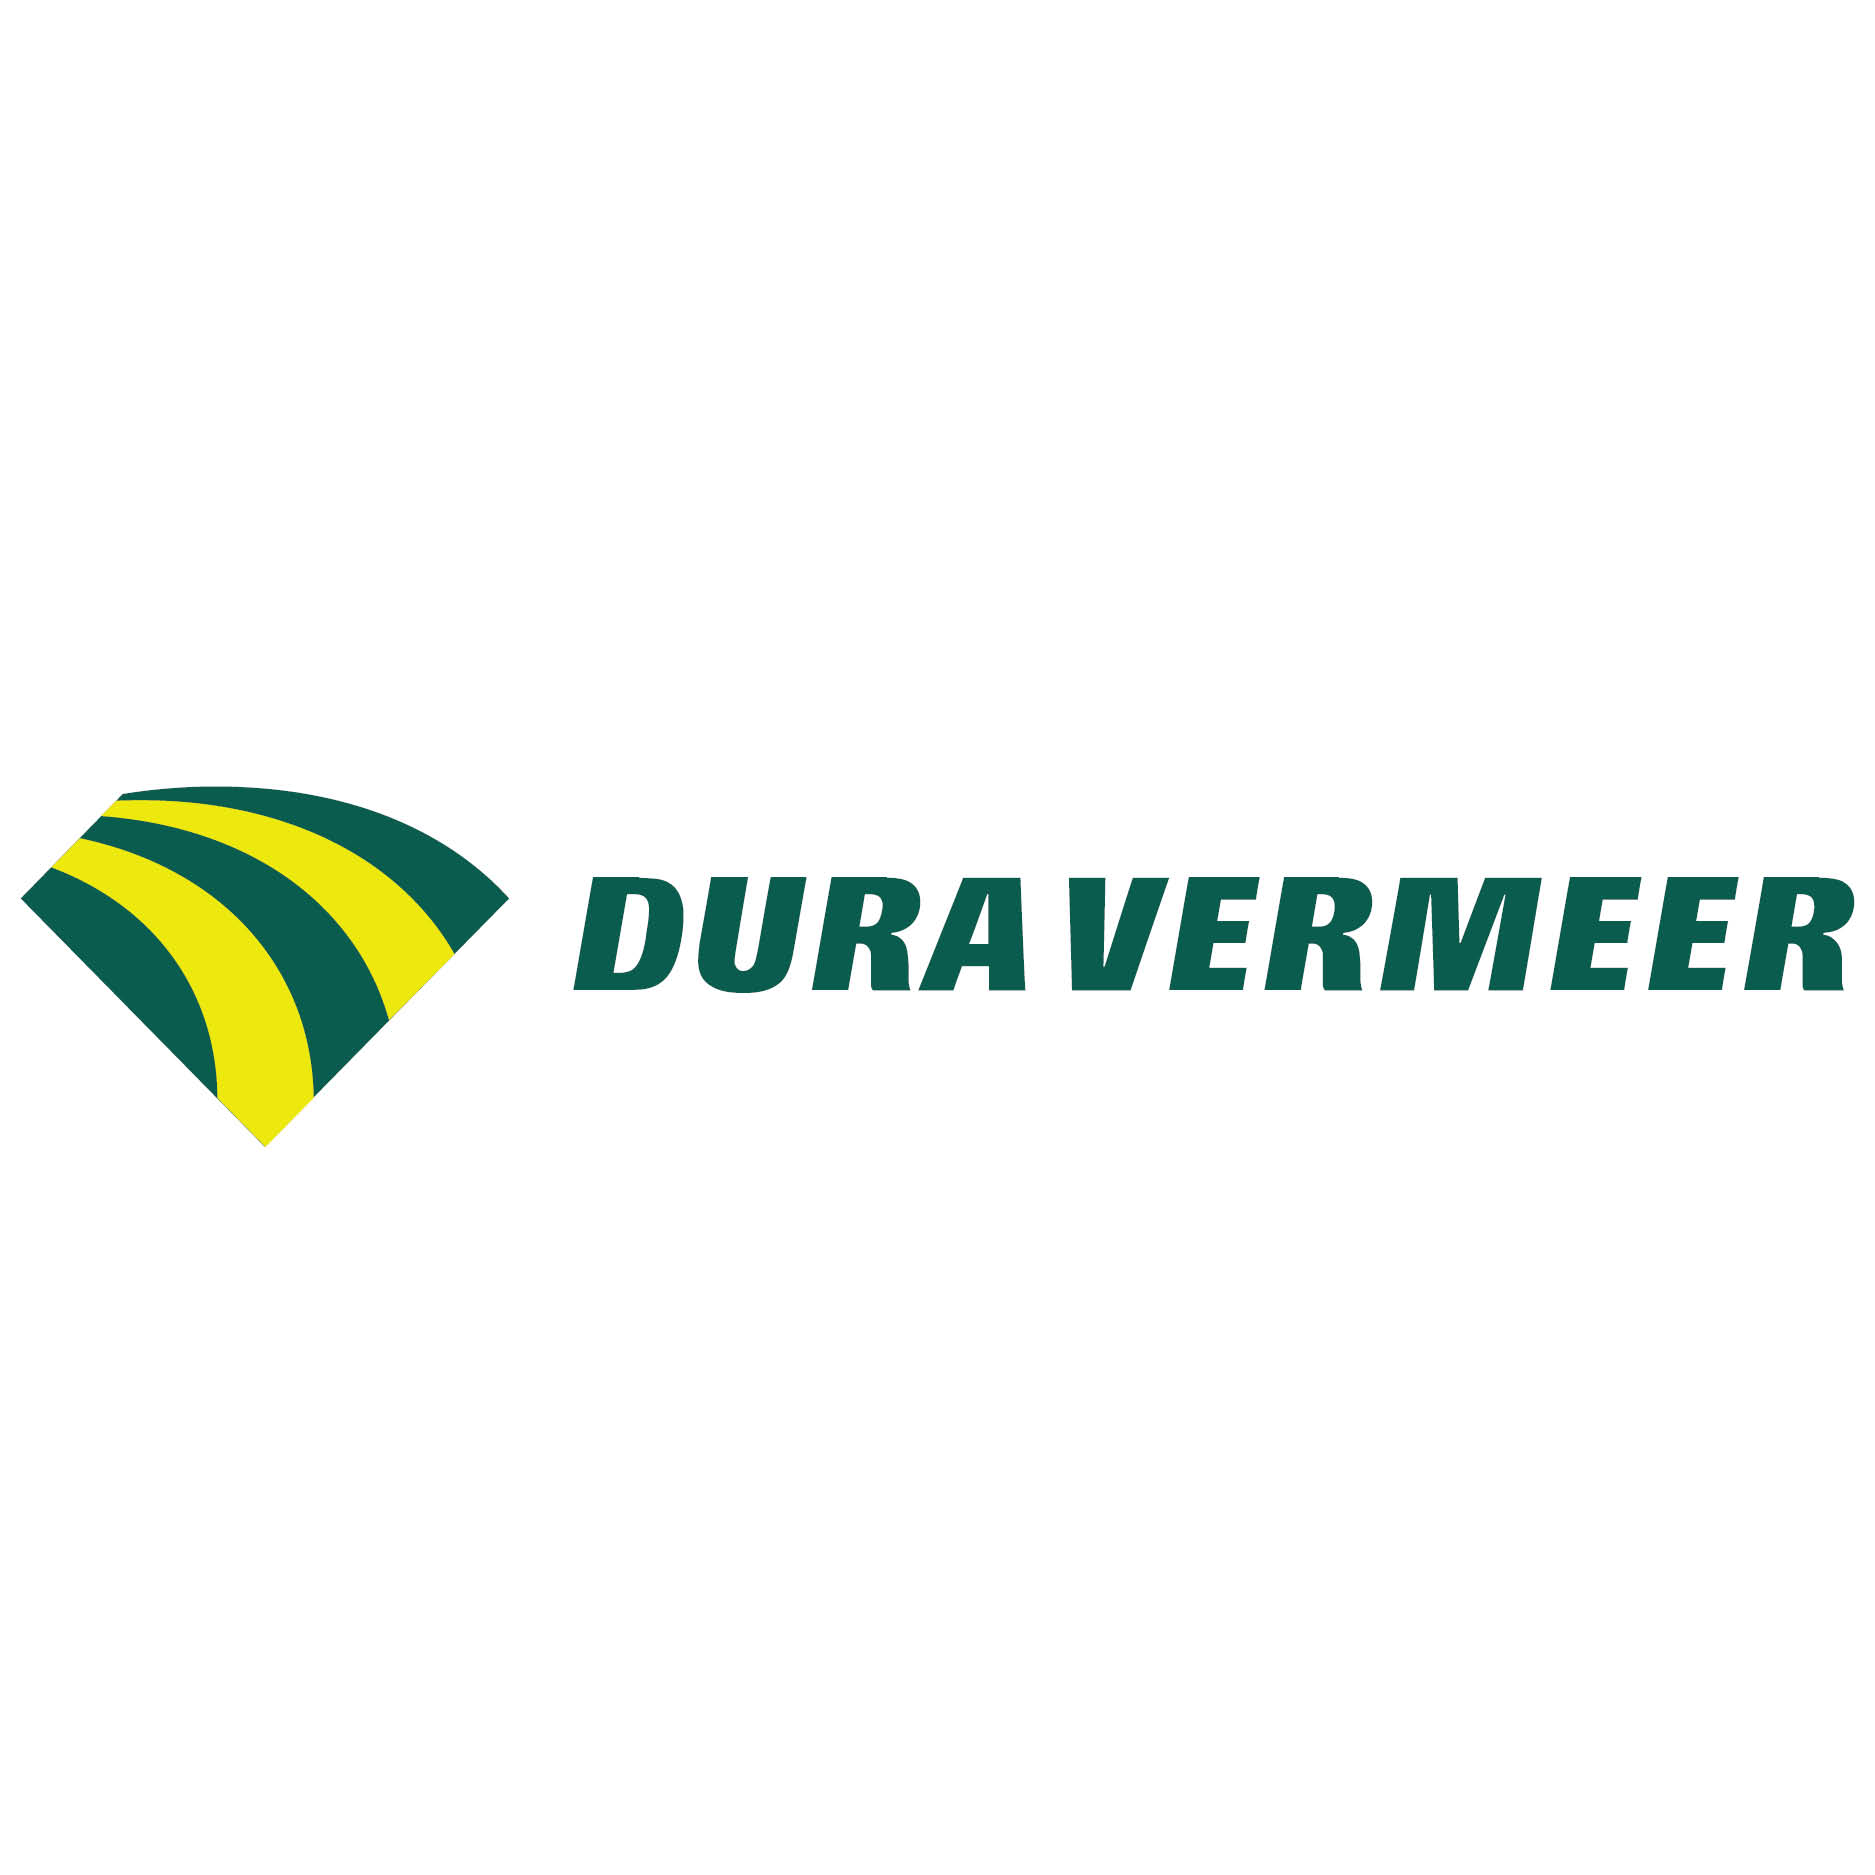  Dura Vermeer